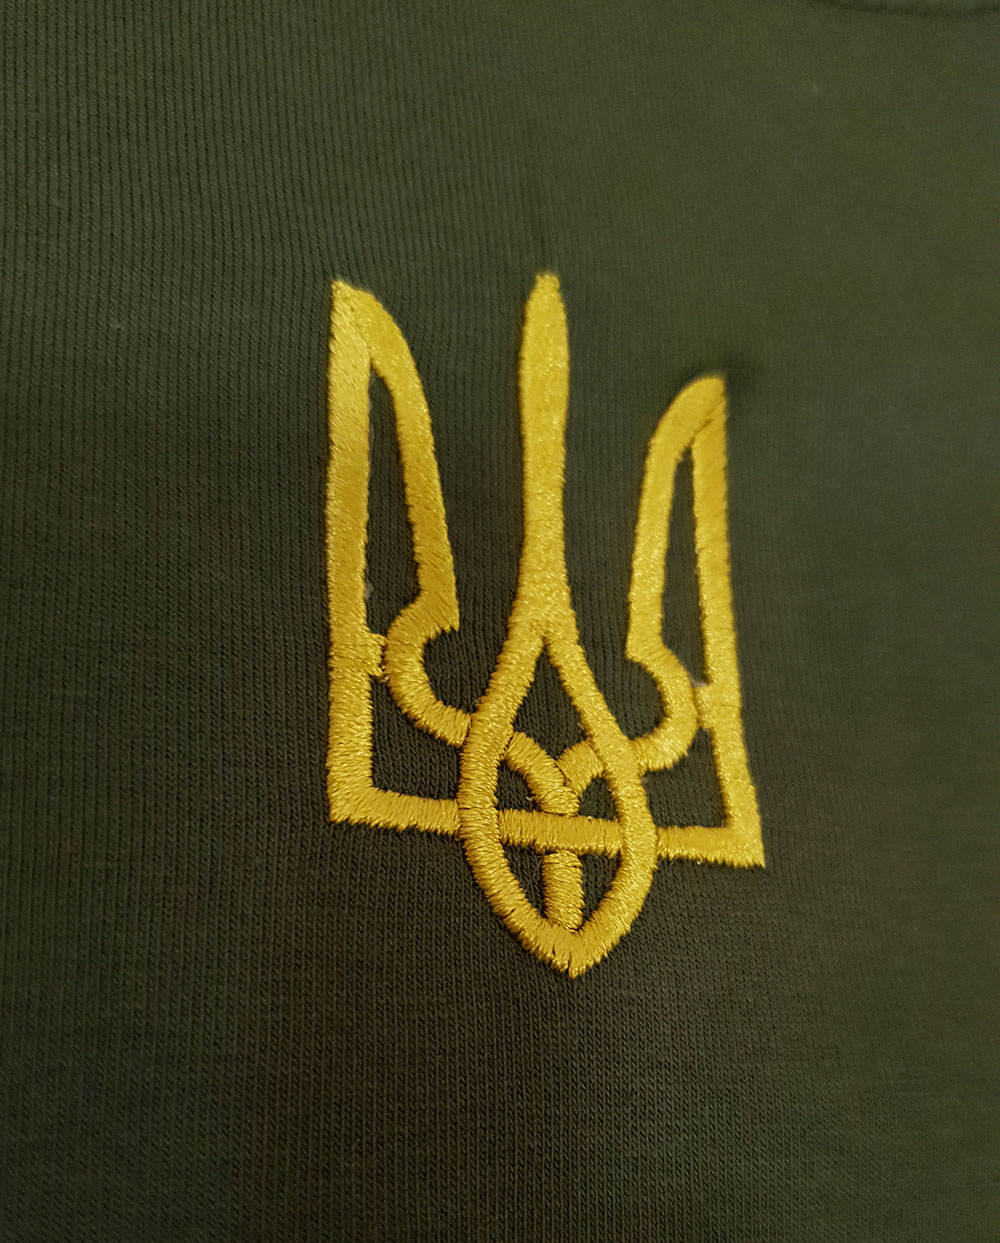 Подовжена футболка з маленьким гербом України на грудях